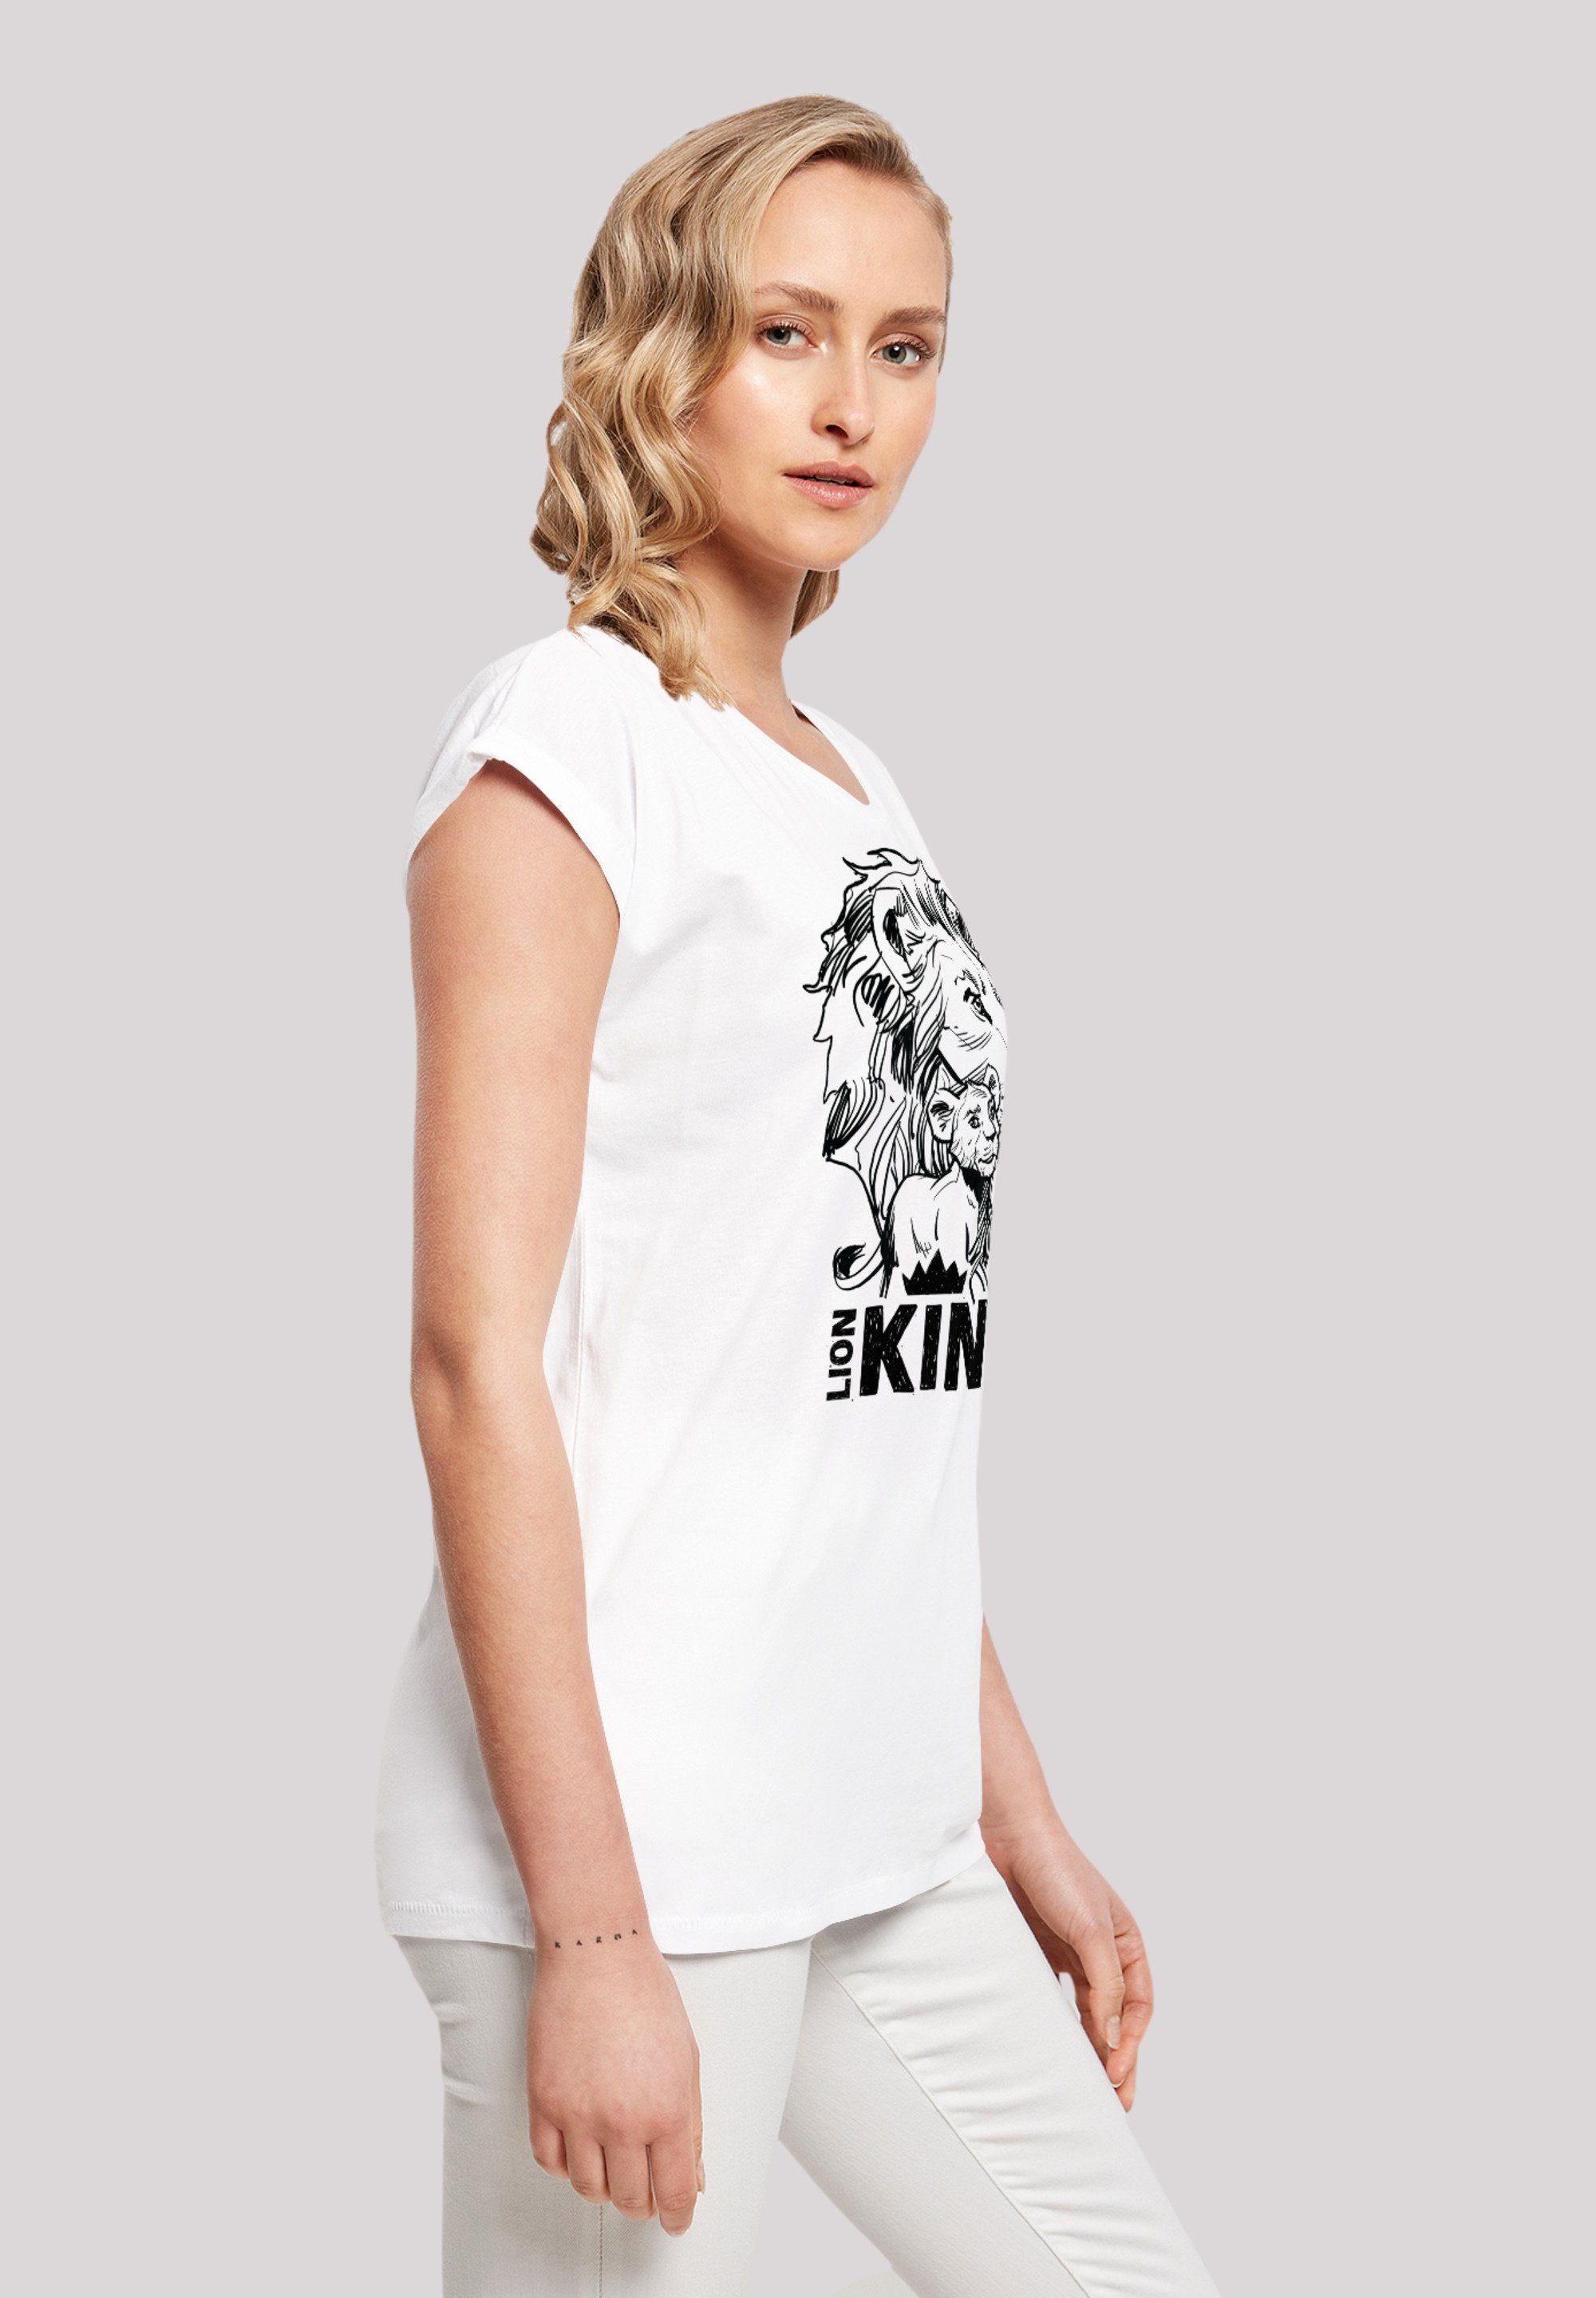 Together der T-Shirt F4NT4STIC Premium Löwen Disney Qualität König white